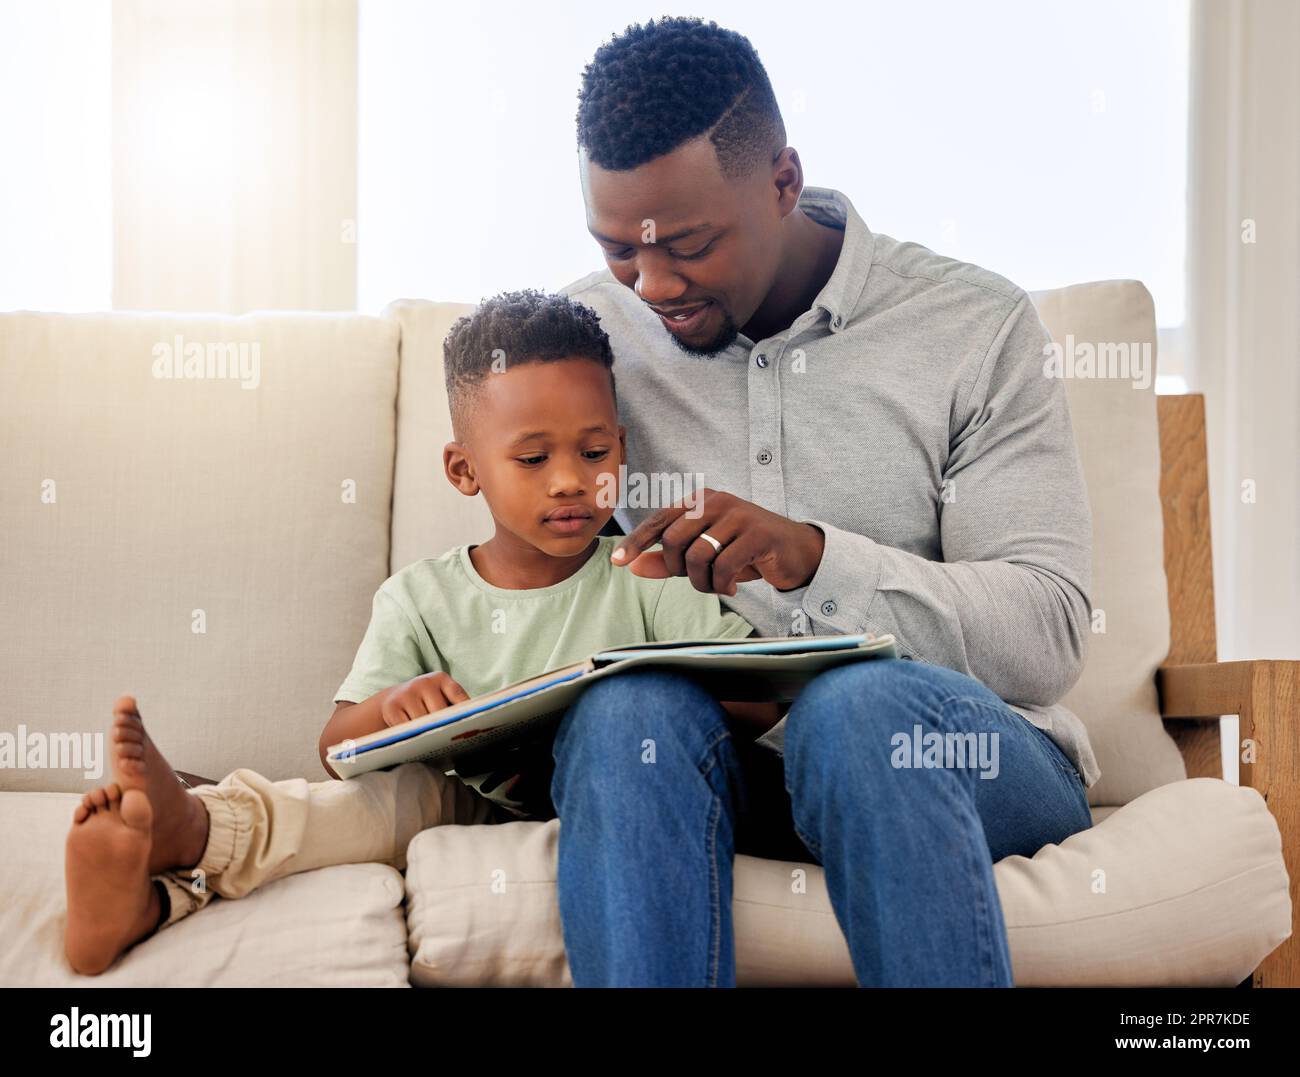 Papà afro-americano che indica la foto in un libro di favole. Adorabile bambino seduto con suo padre e leggendo un libro di favole insieme sul divano di casa. Padre e figlio passano del tempo insieme Foto Stock